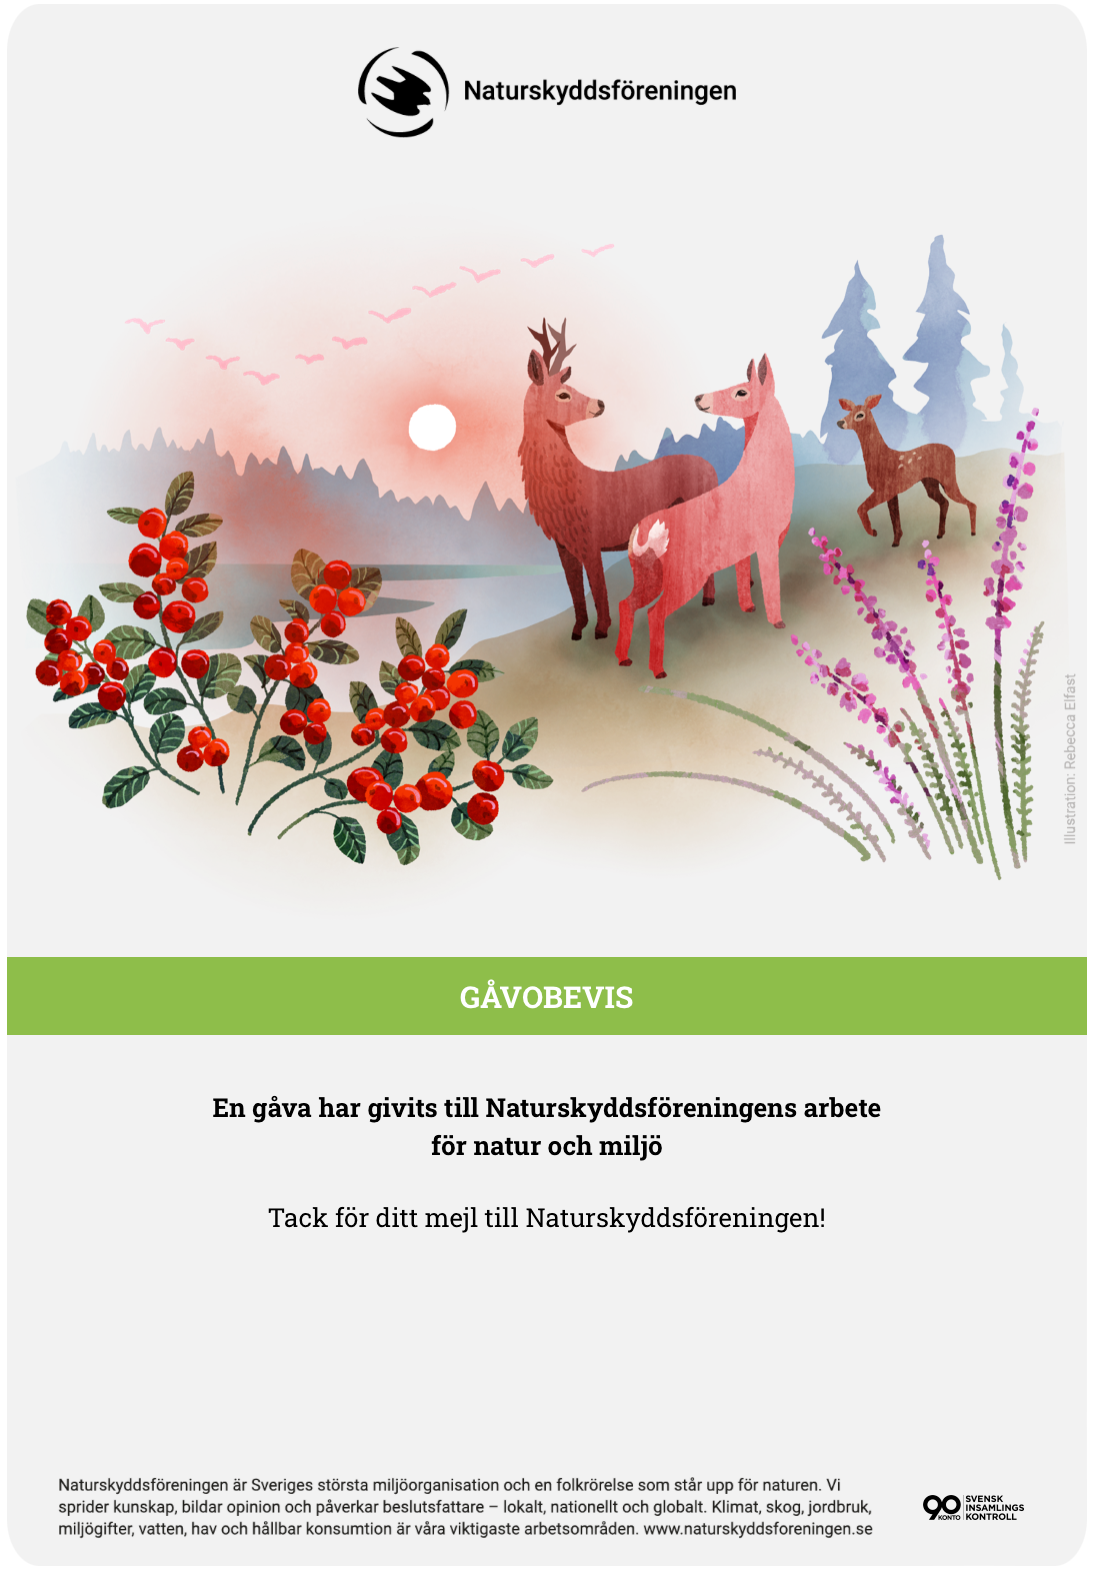 スウェーデンの自然保護団体への寄付の手紙